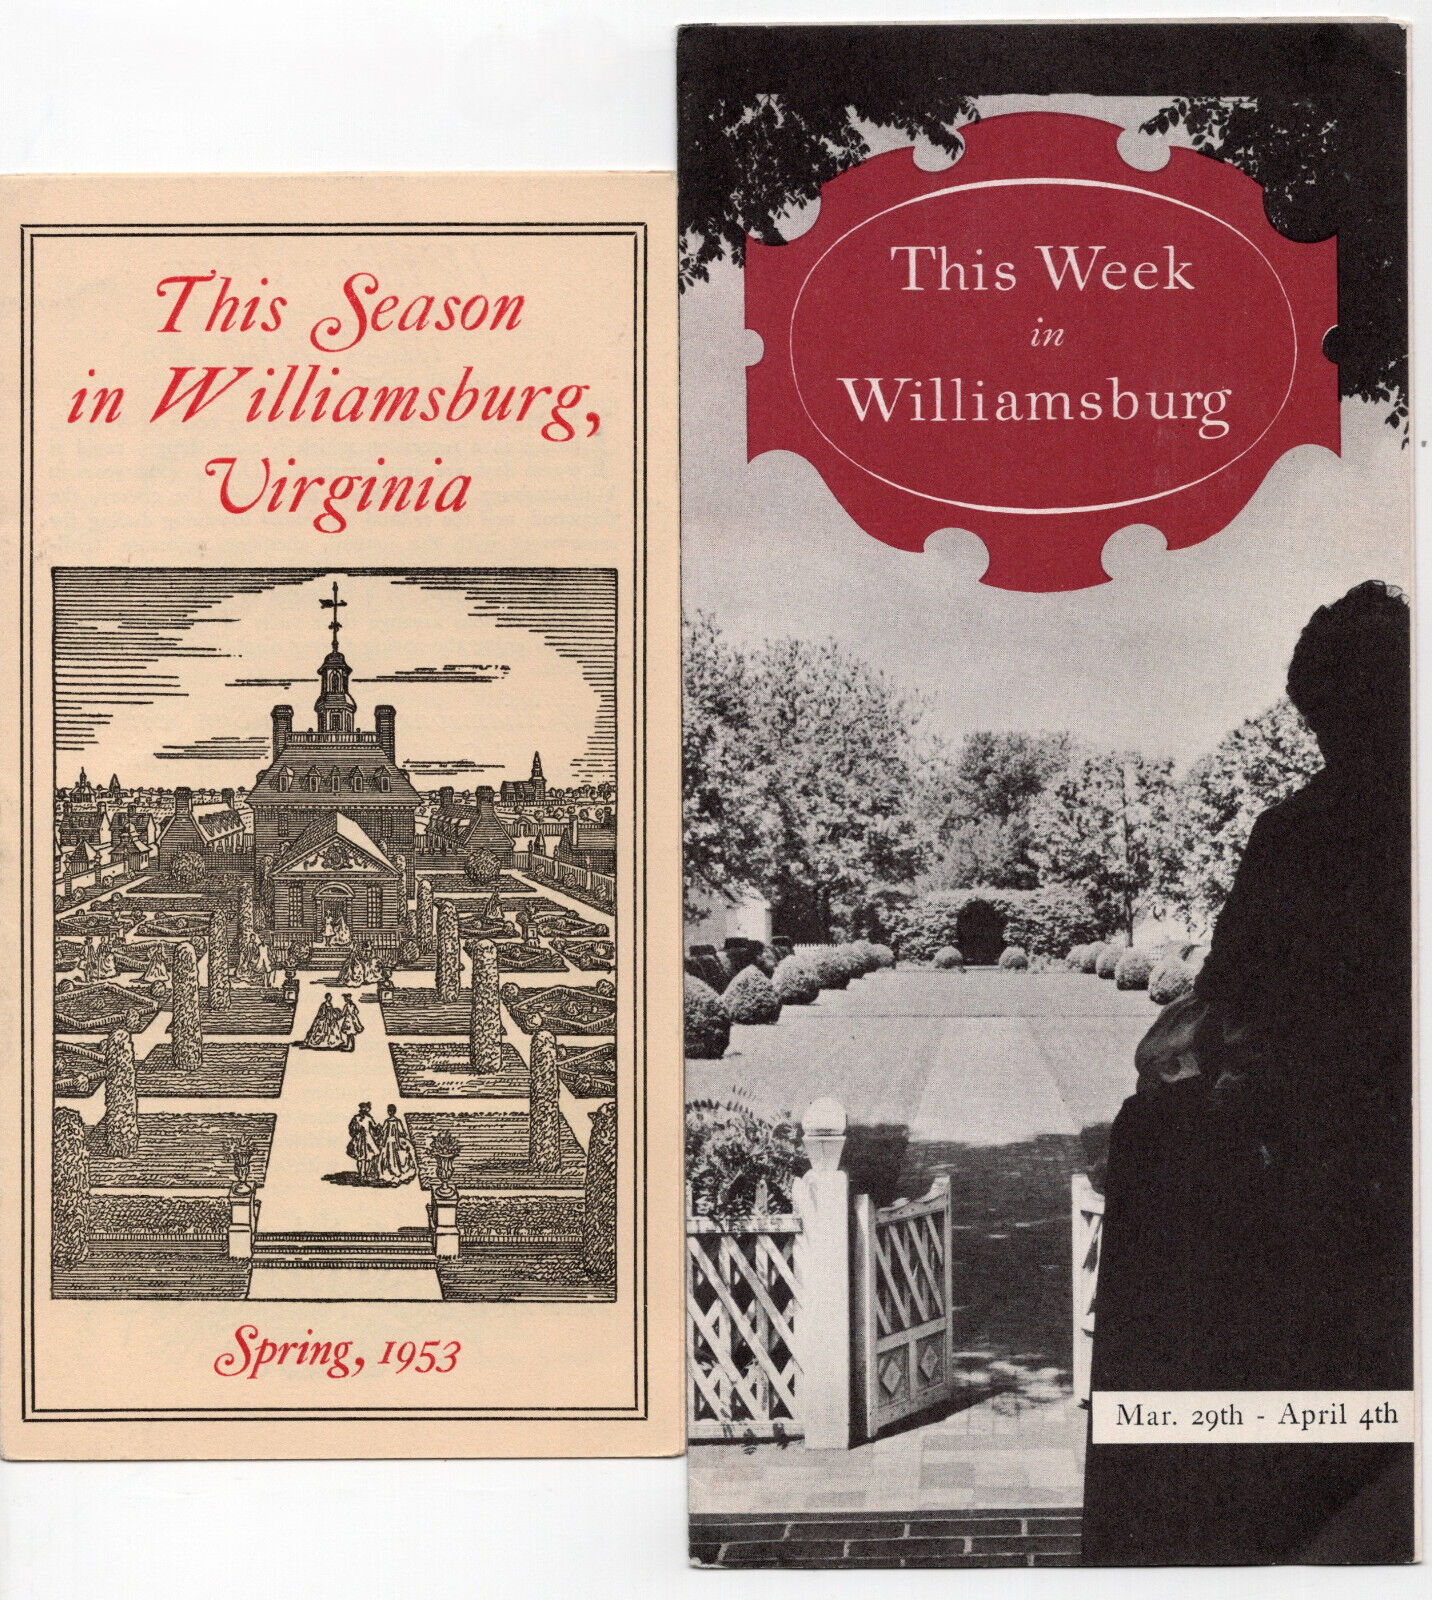 1953 This Week in Williamsburg & This Season in Williamsburg Virginia Brochures